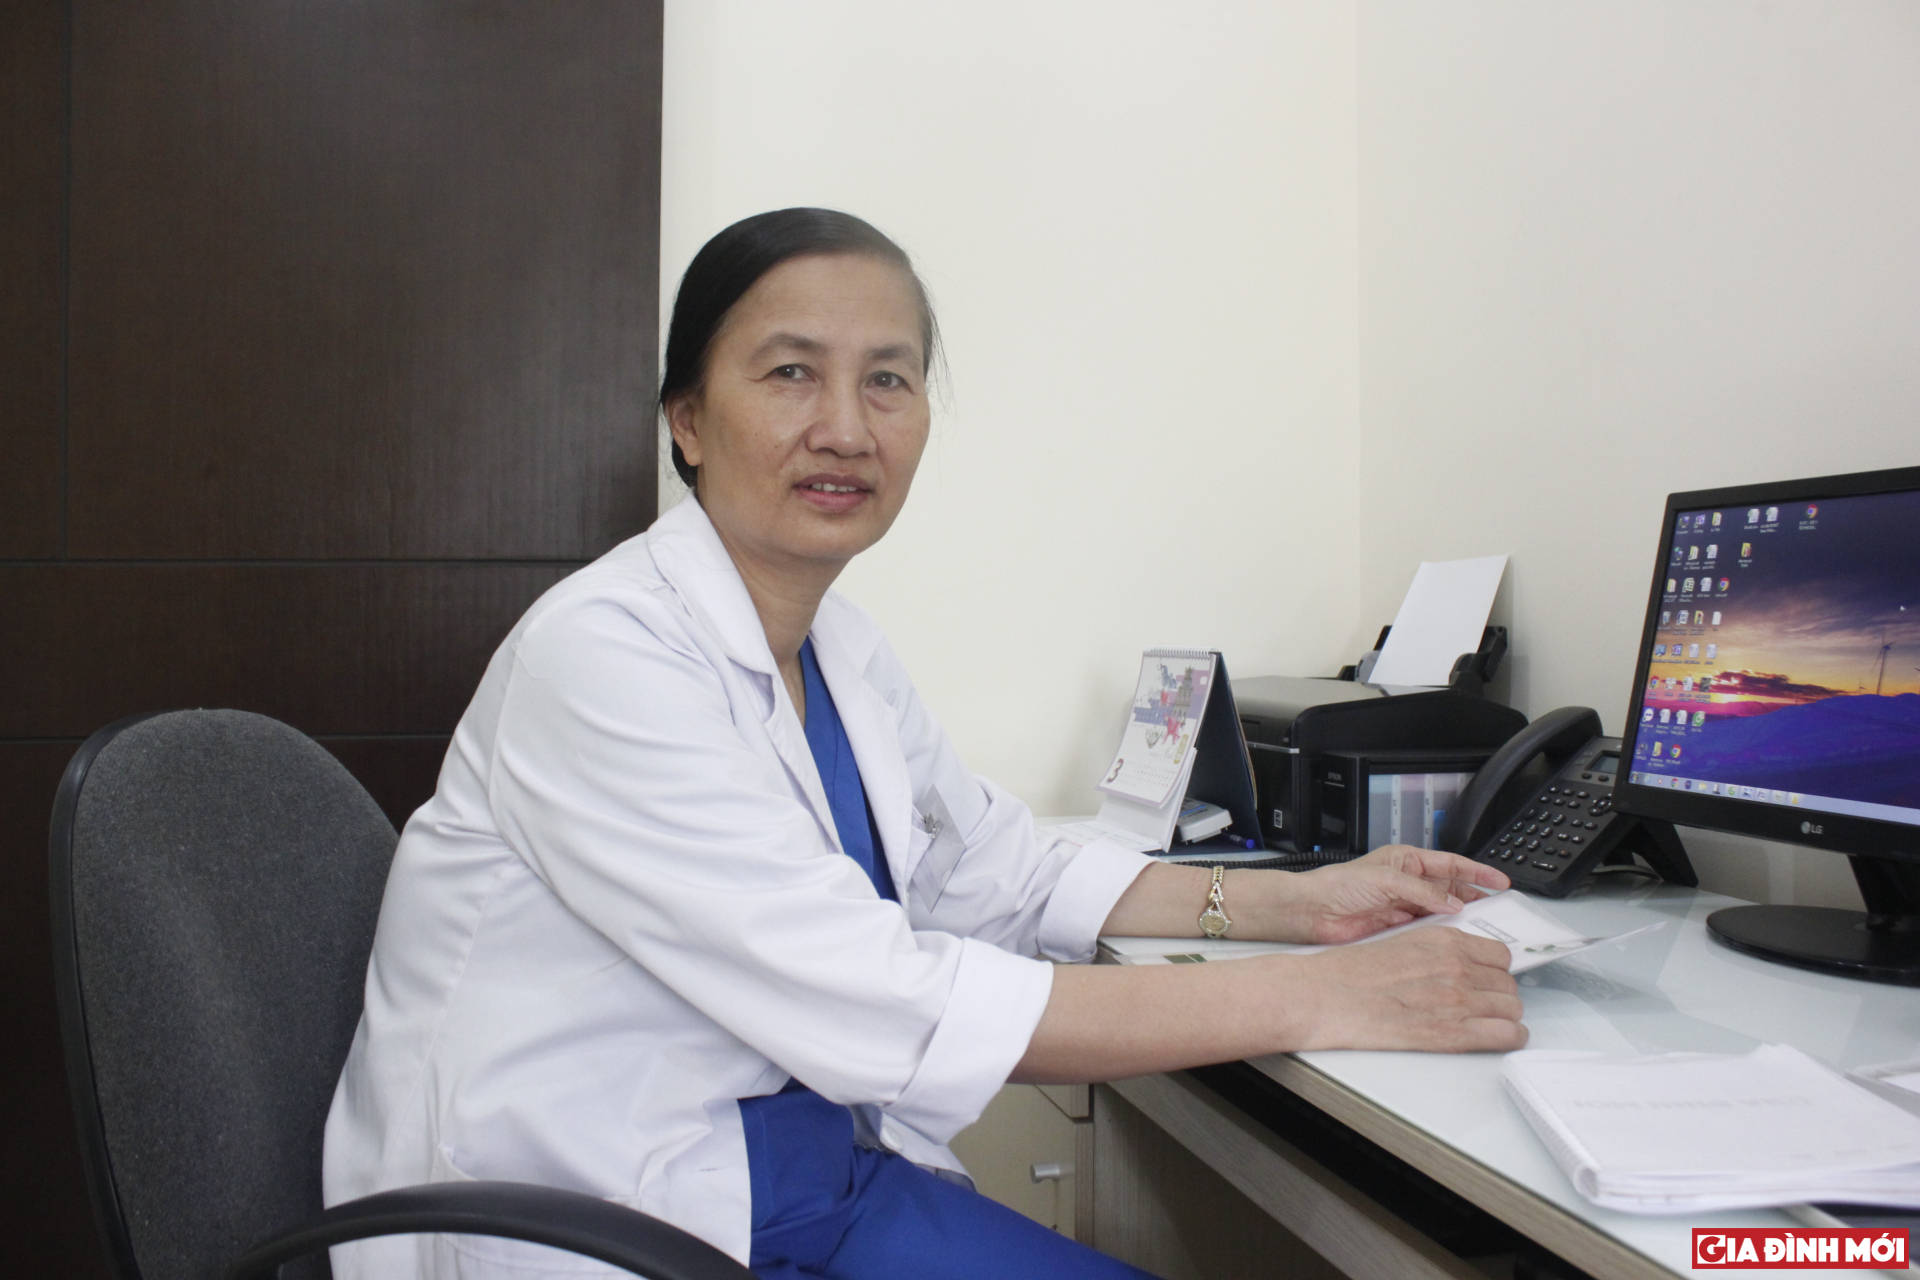   BS CKI Dương Thị Thanh Huyền – Phòng Khám Tai Mũi Họng, Bệnh viện Đa khoa Quốc tế Thu Cúc  